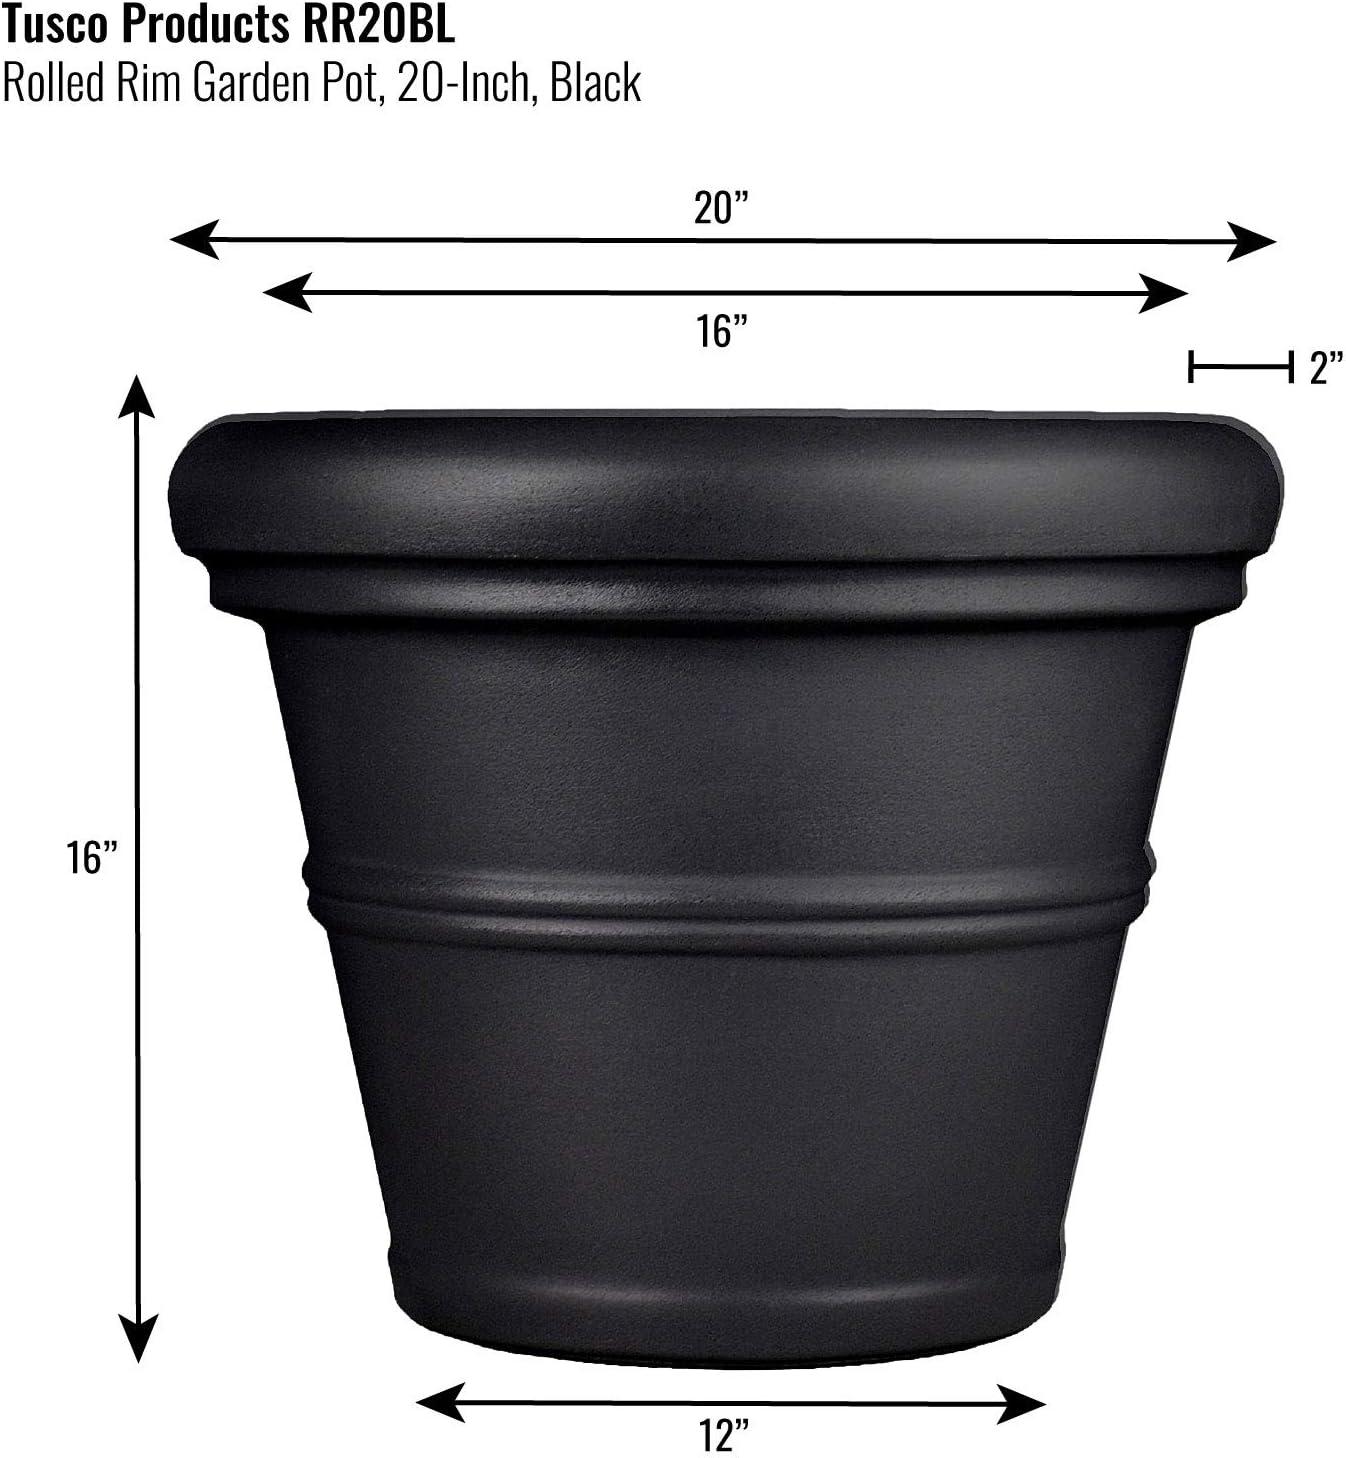 Classic 20" Rolled Rim Black Garden Planter for Indoor & Outdoor